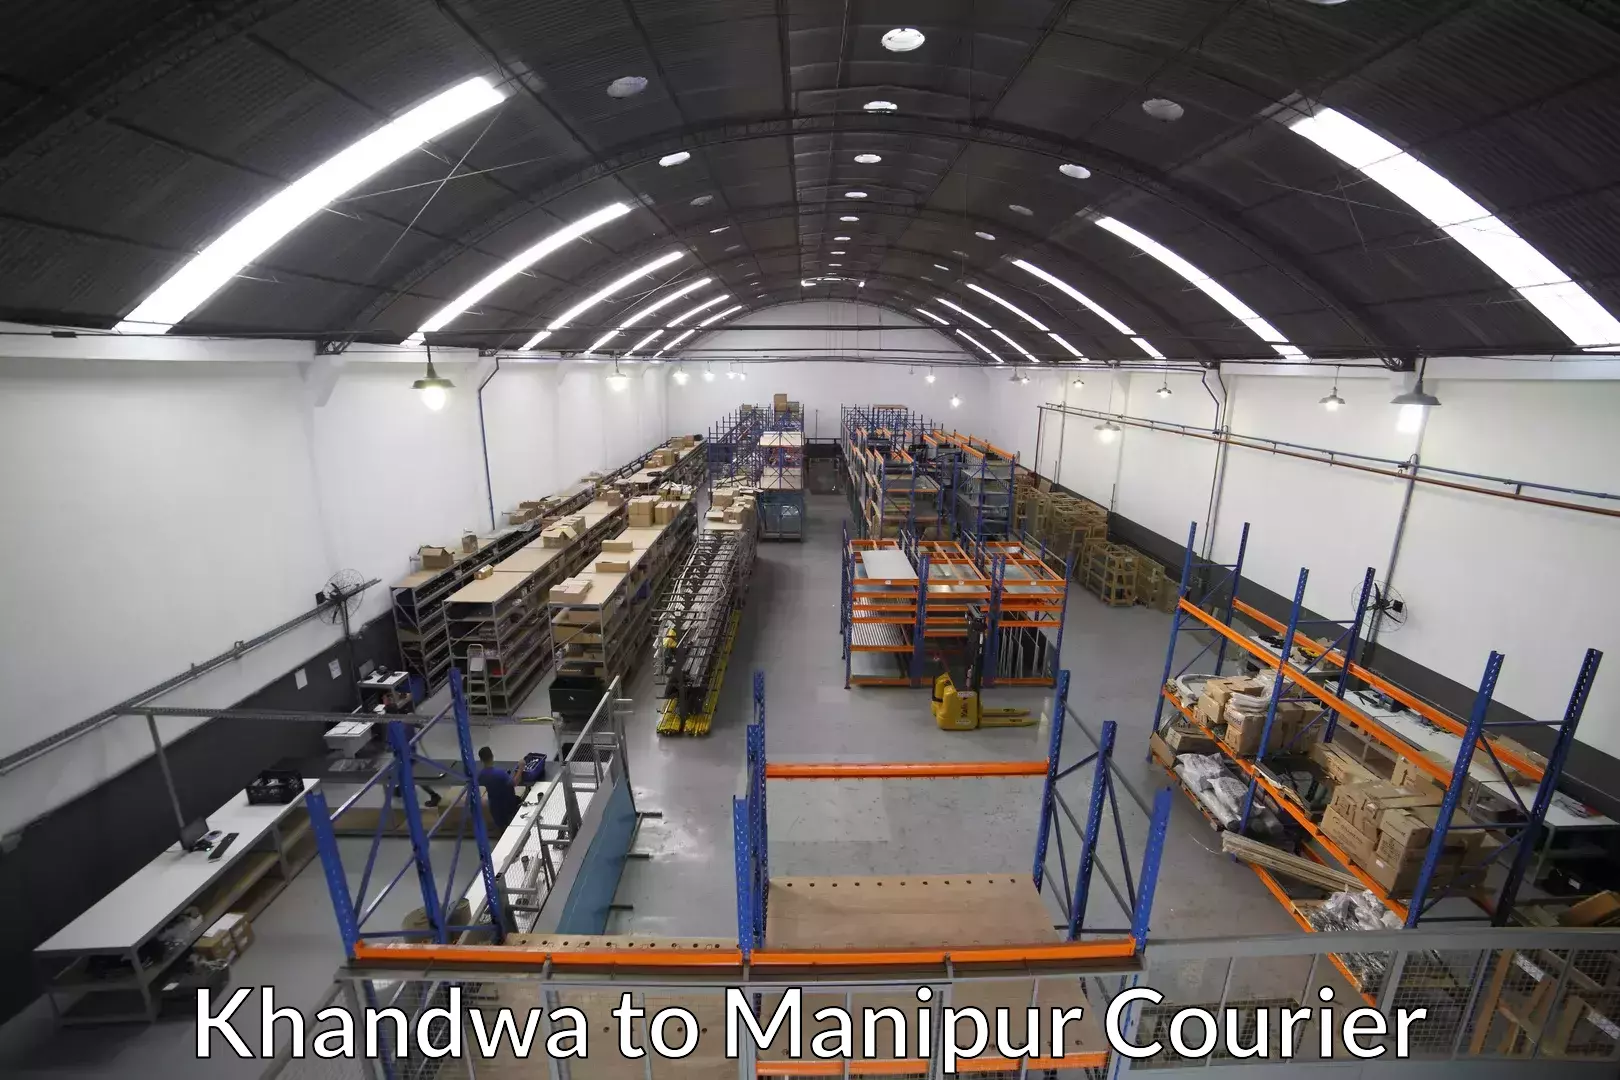 Professional moving company Khandwa to Senapati